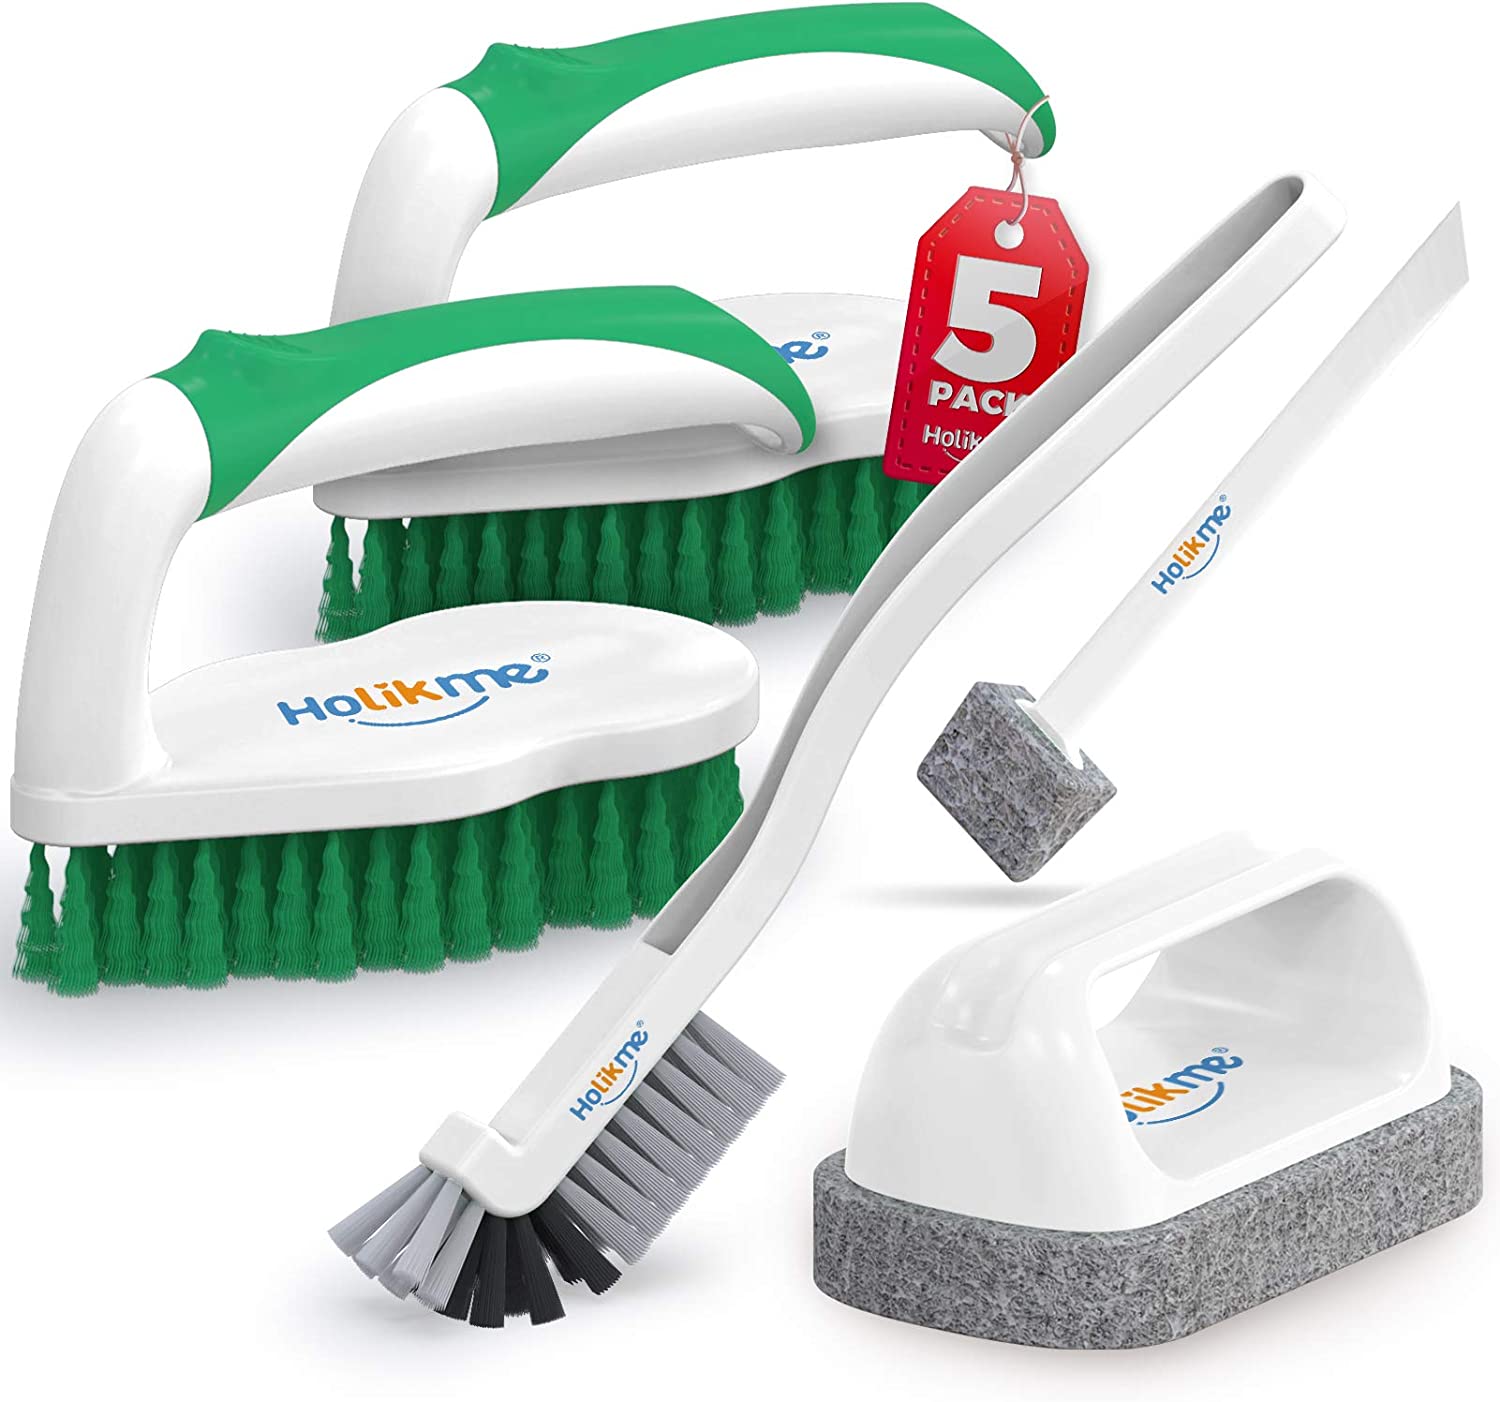 Holikme Decontamination Ergonomic Cleaning Brushes, 5-Pack